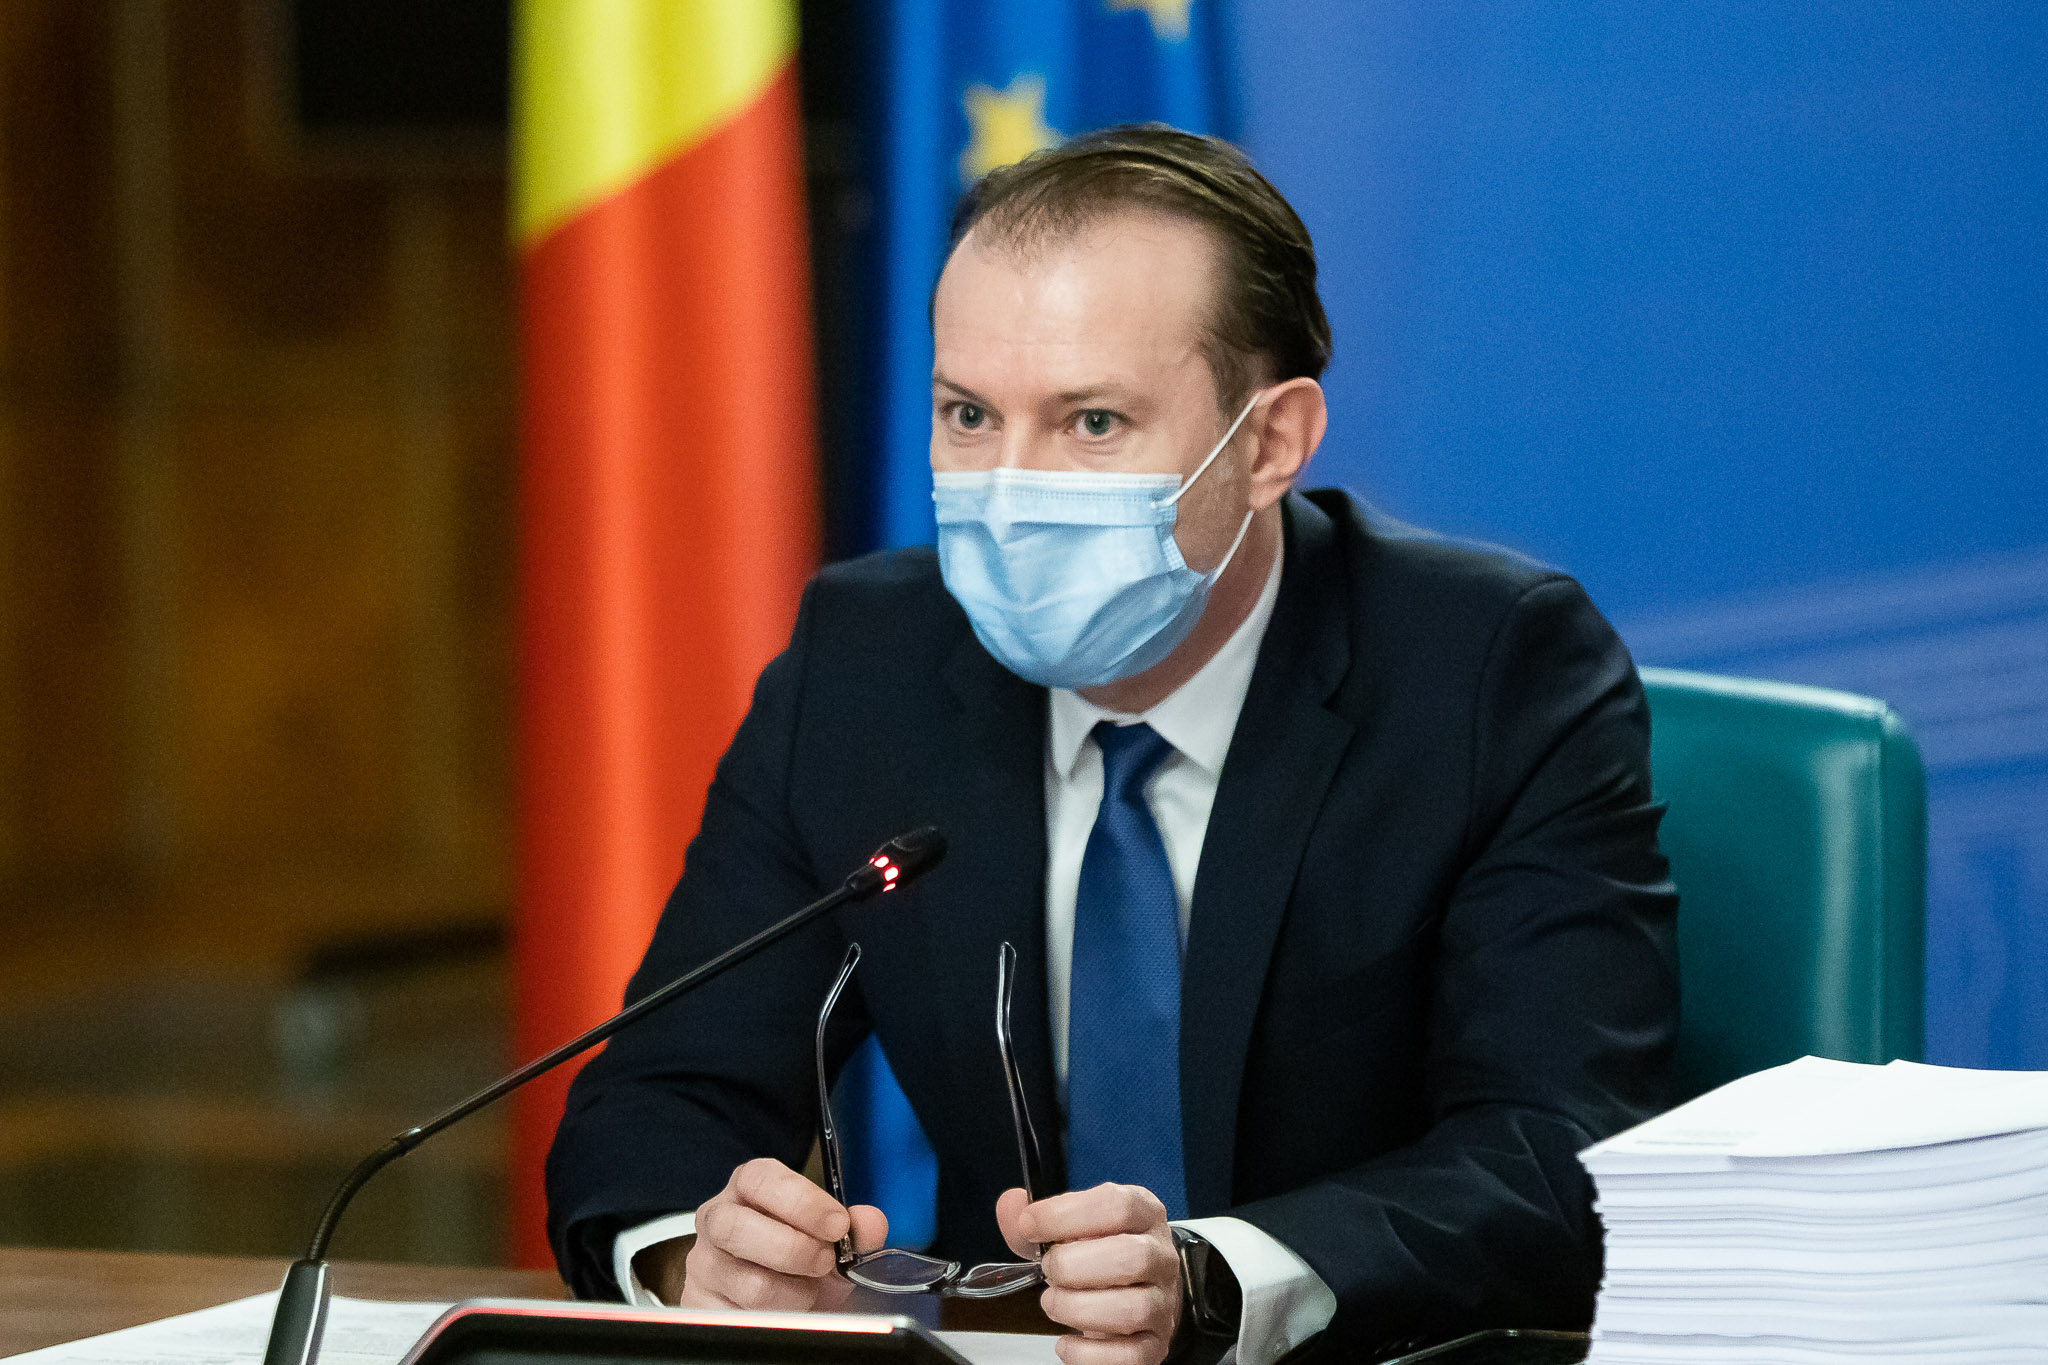 Florin Cîțu, apel către români să se înscrie pe listele de așteptare pentru vaccinare: Sper să nu ajungem să avem doze nefolosite